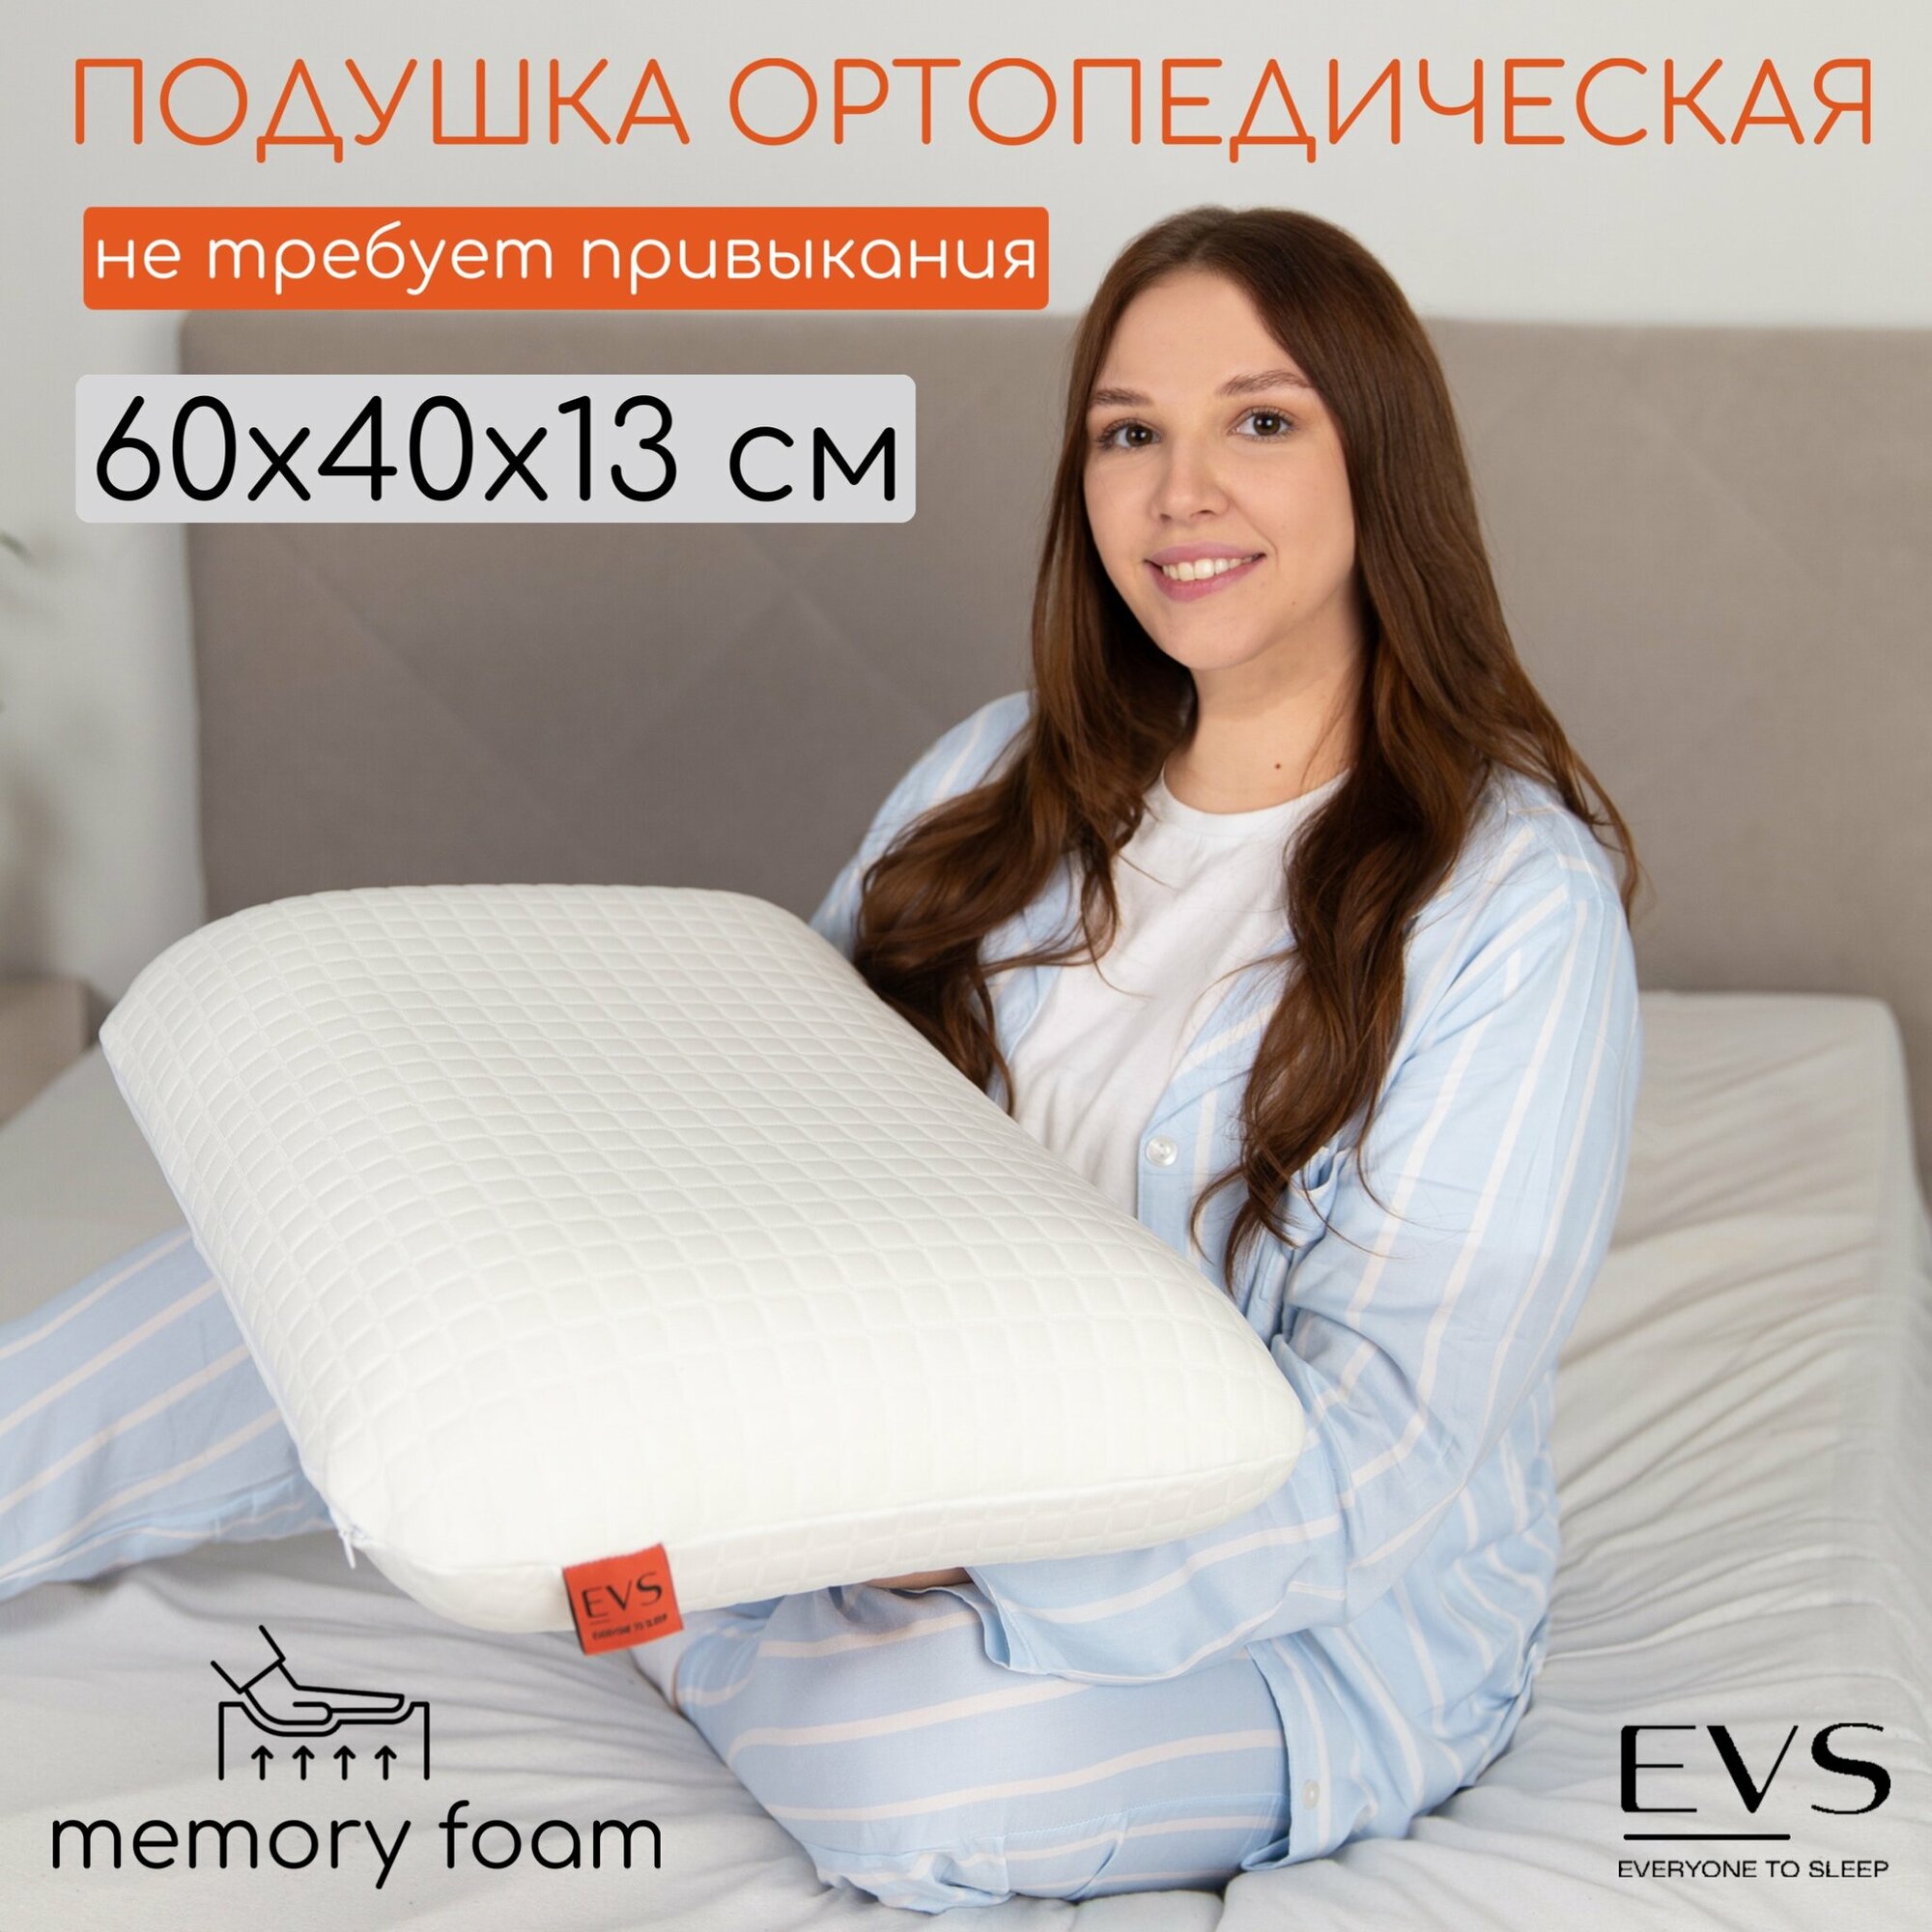 Подушка ортопедическая Classic для сна с эффектом памяти 60x40,13см для взрослых, чехол 100% хлопковый трикотаж, наполнитель пенополиуретан